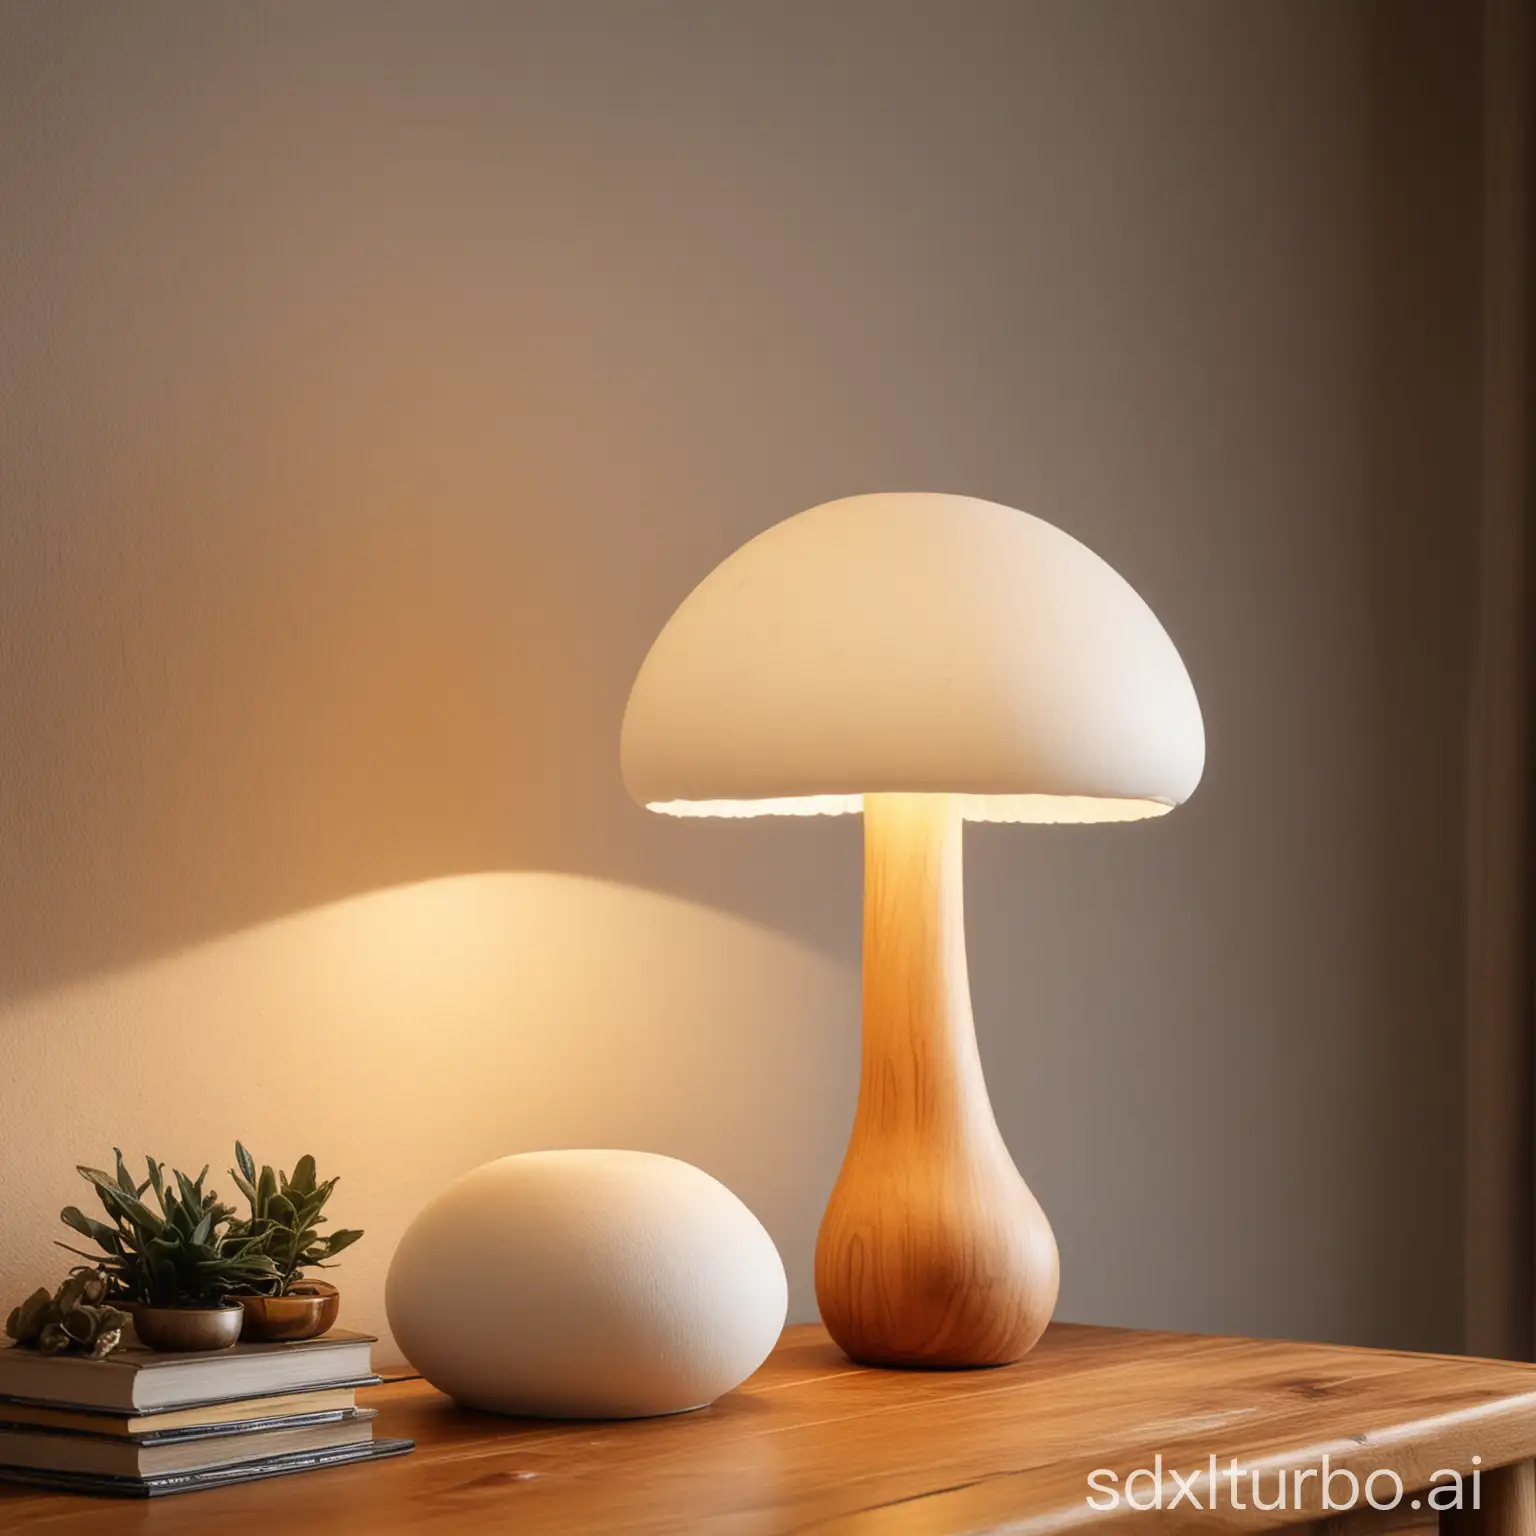 Elegant-White-Mushroom-Table-Lamp-on-Wooden-Desk